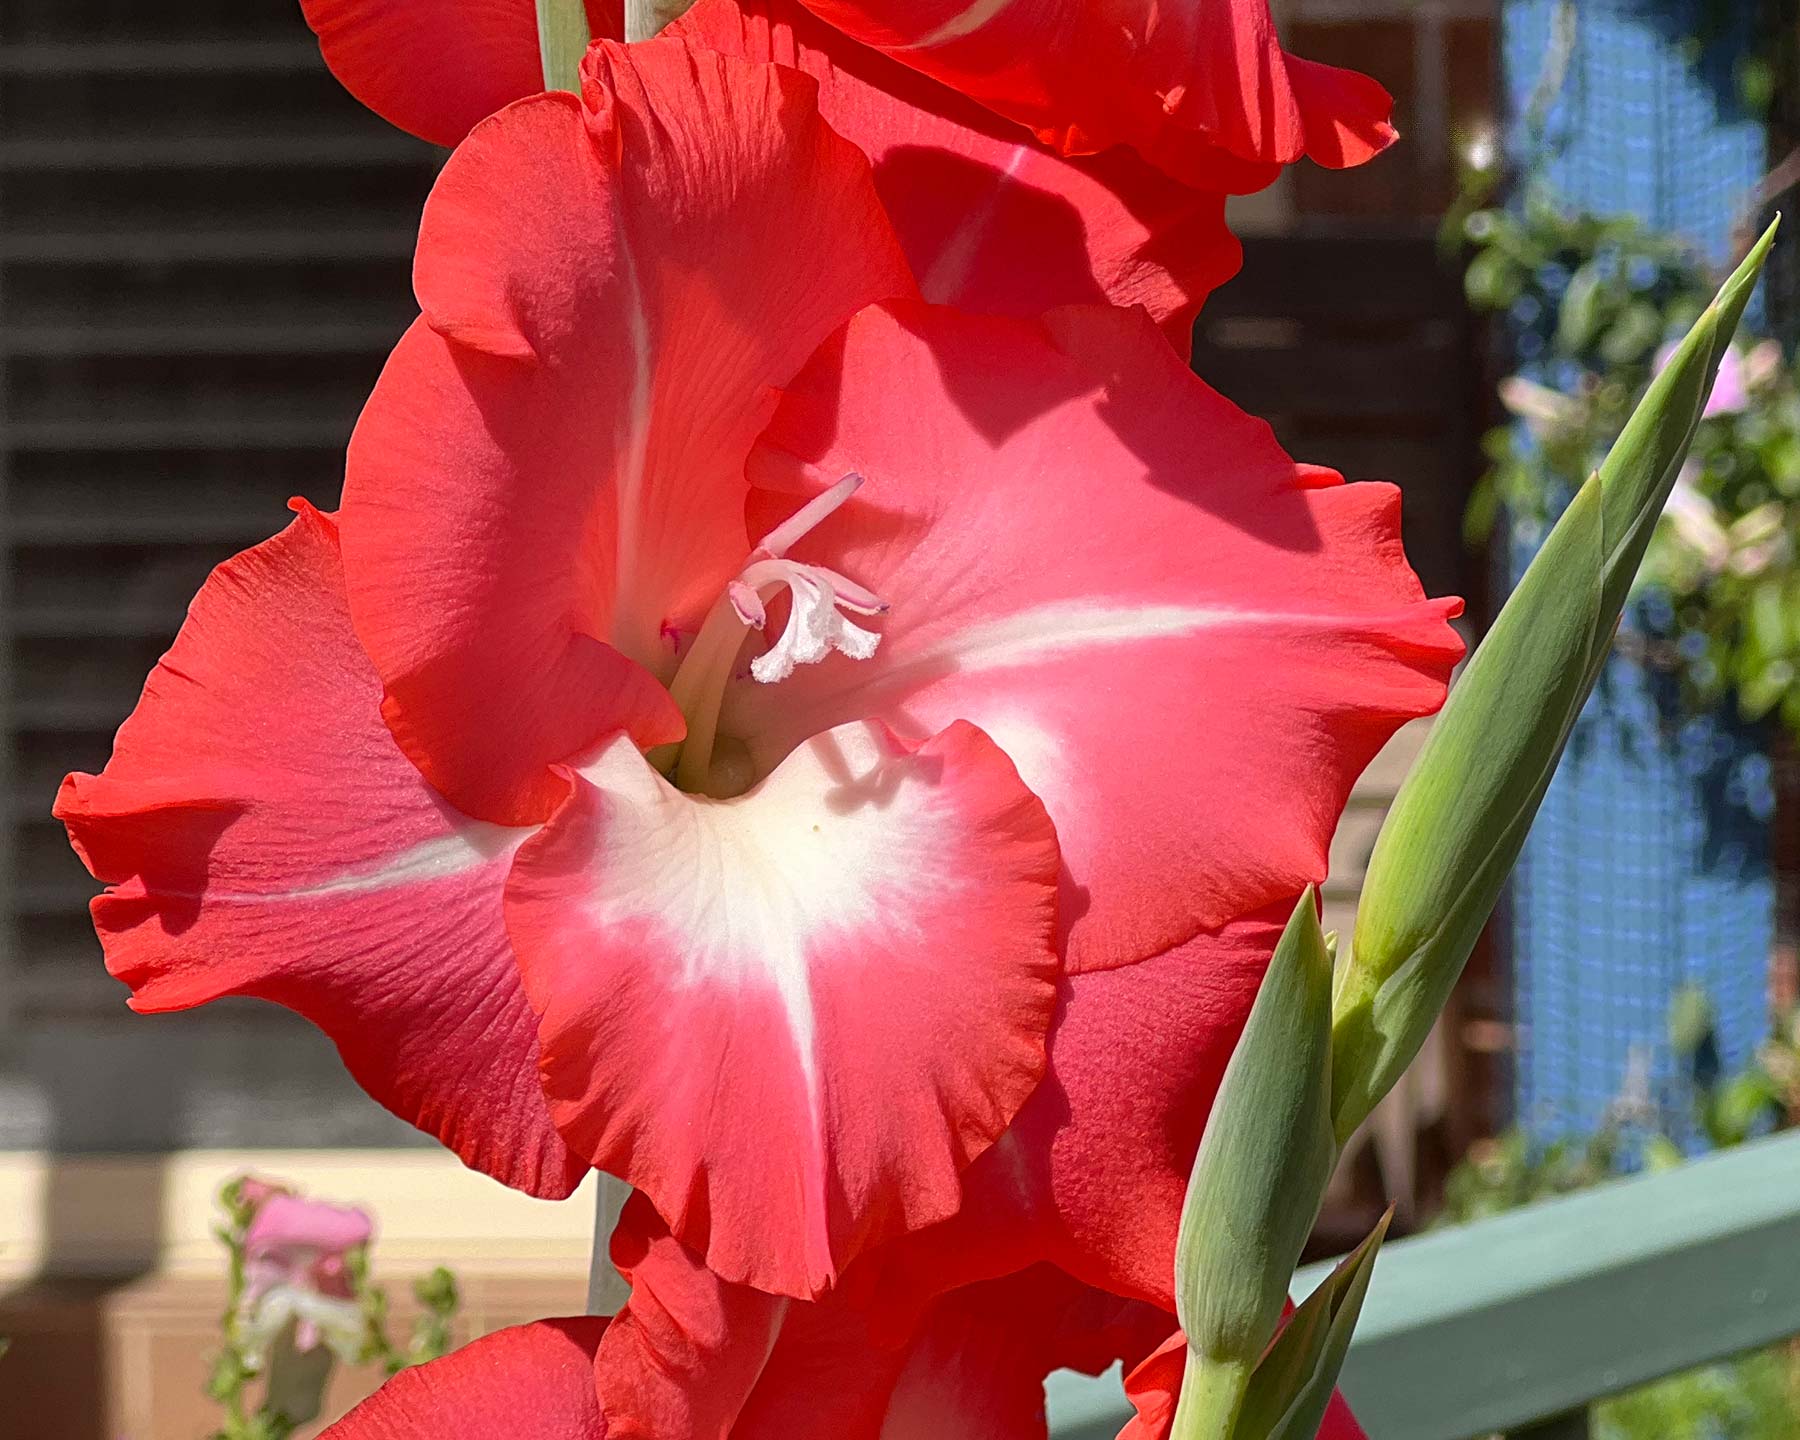 Gladiolus hybrid